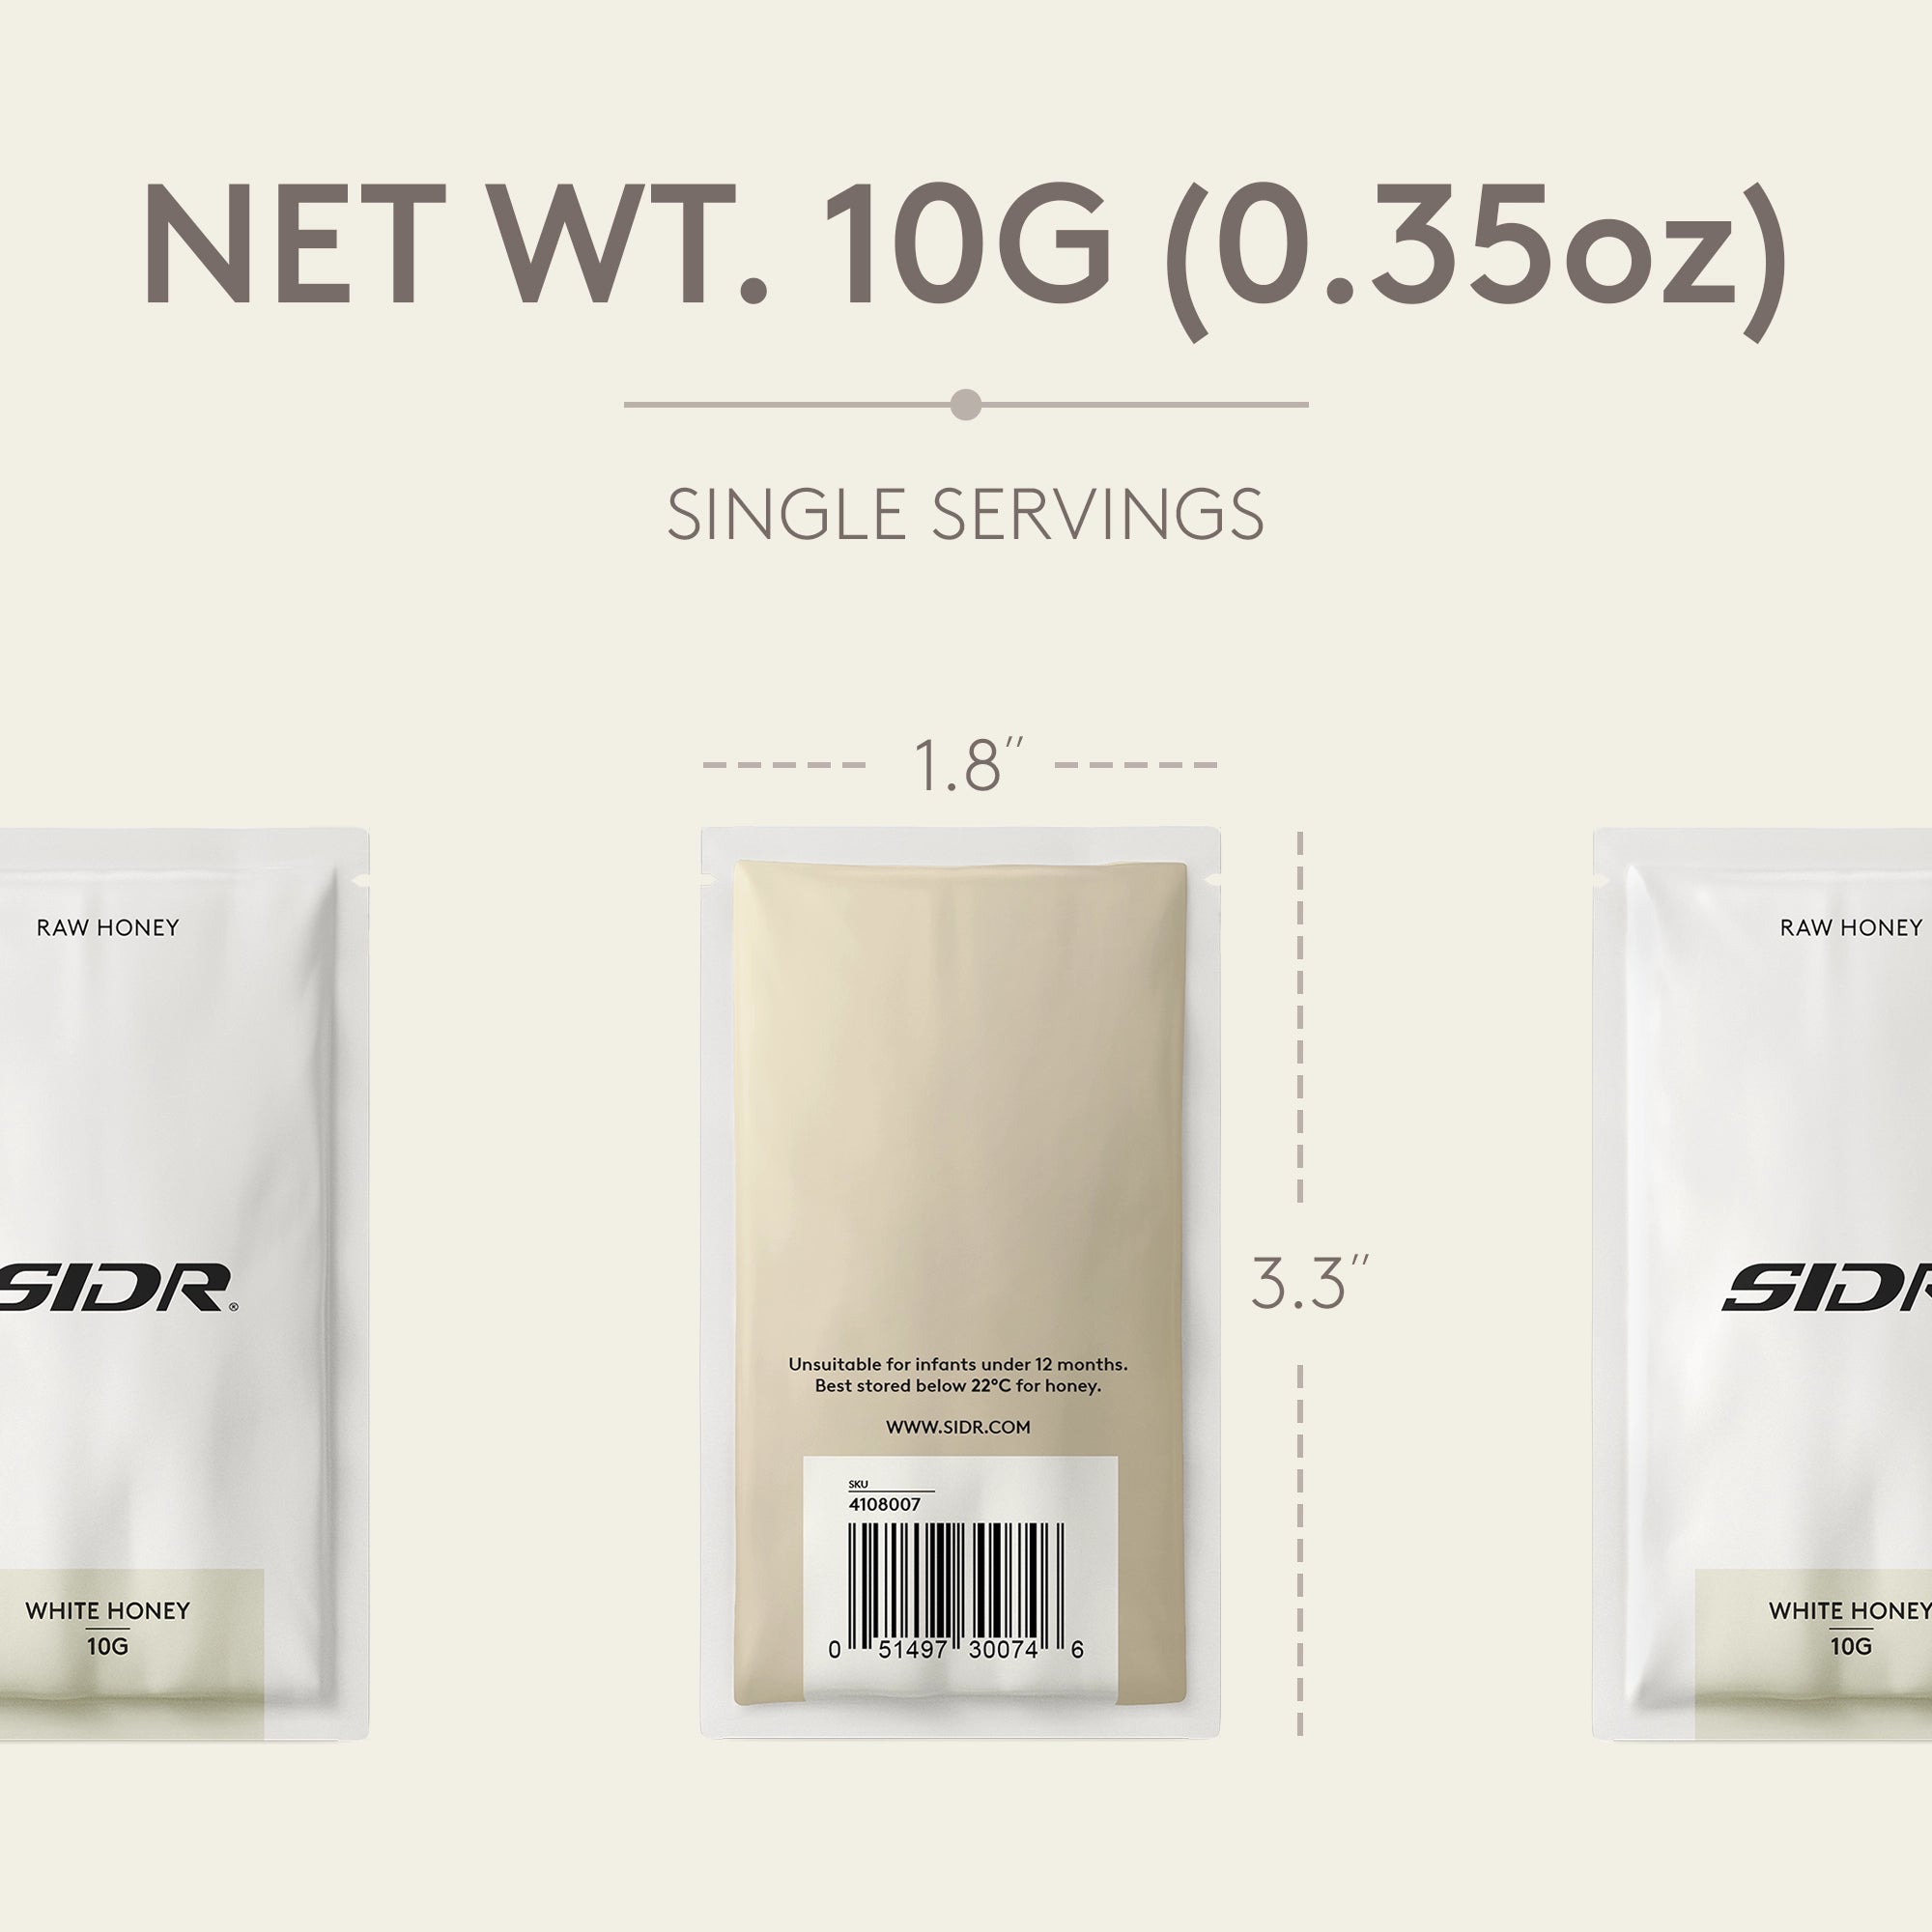 white honey packet net weight